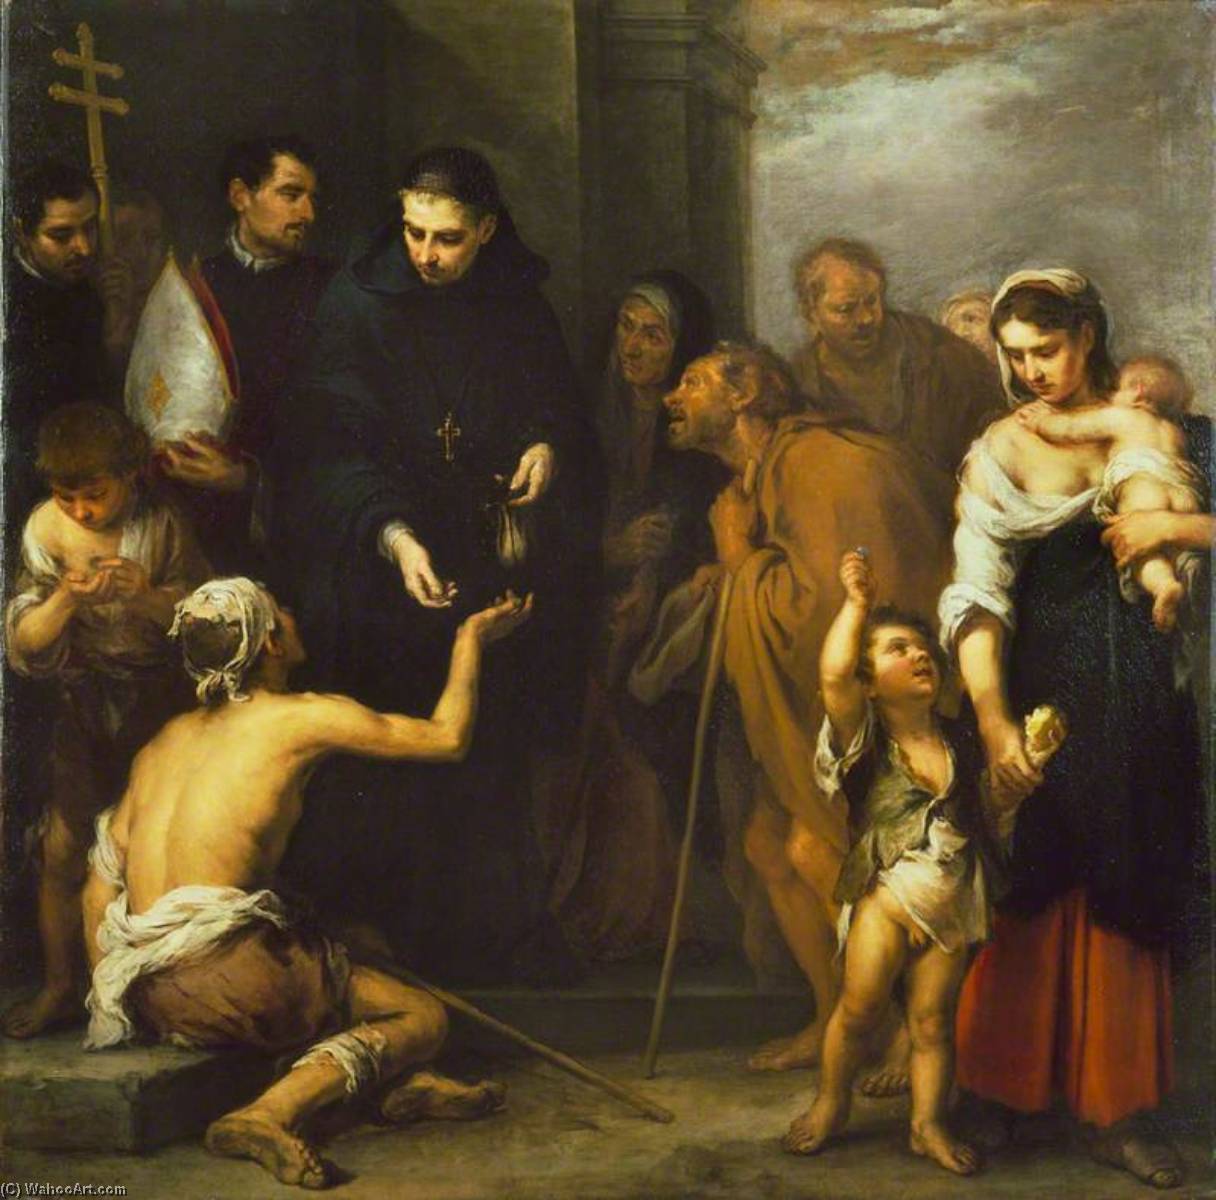 WikiOO.org - אנציקלופדיה לאמנויות יפות - ציור, יצירות אמנות Bartolome Esteban Murillo - The Charity of Saint Thomas of Villanueva